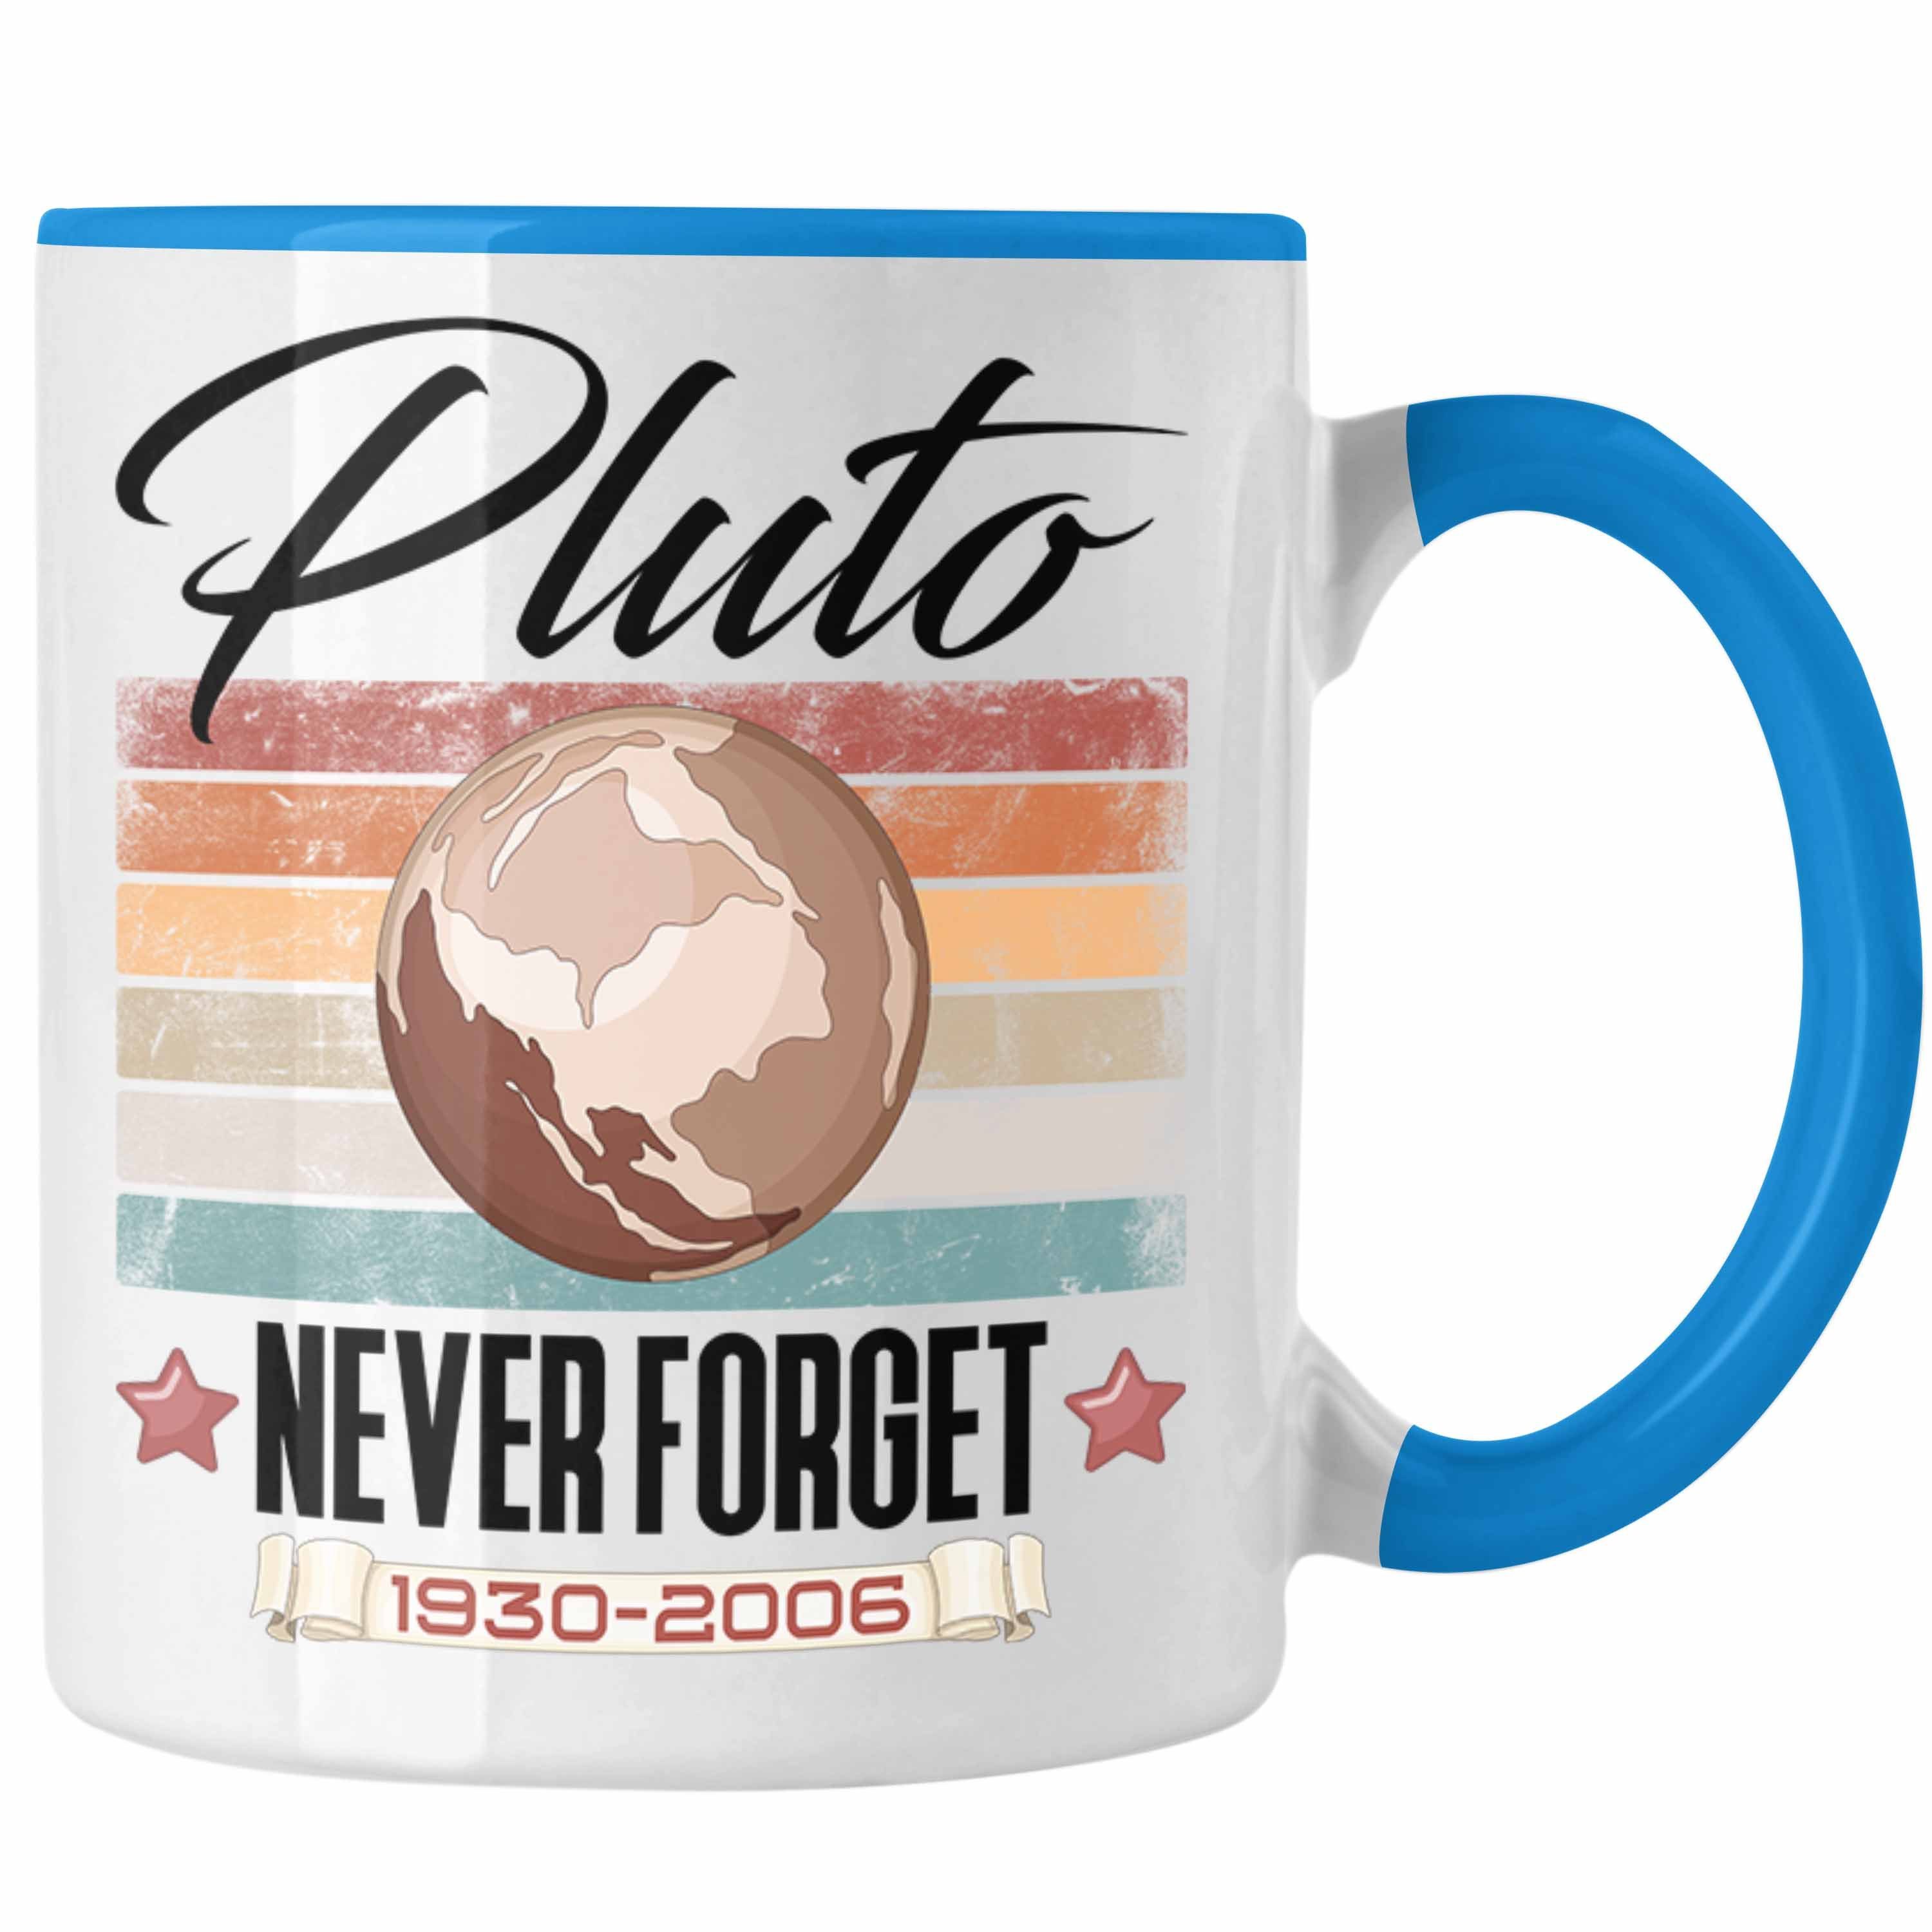 Trendation Tasse Tasse "Pluto Lustiges Astronomie-Fans Forget" Never Blau Geschenk für